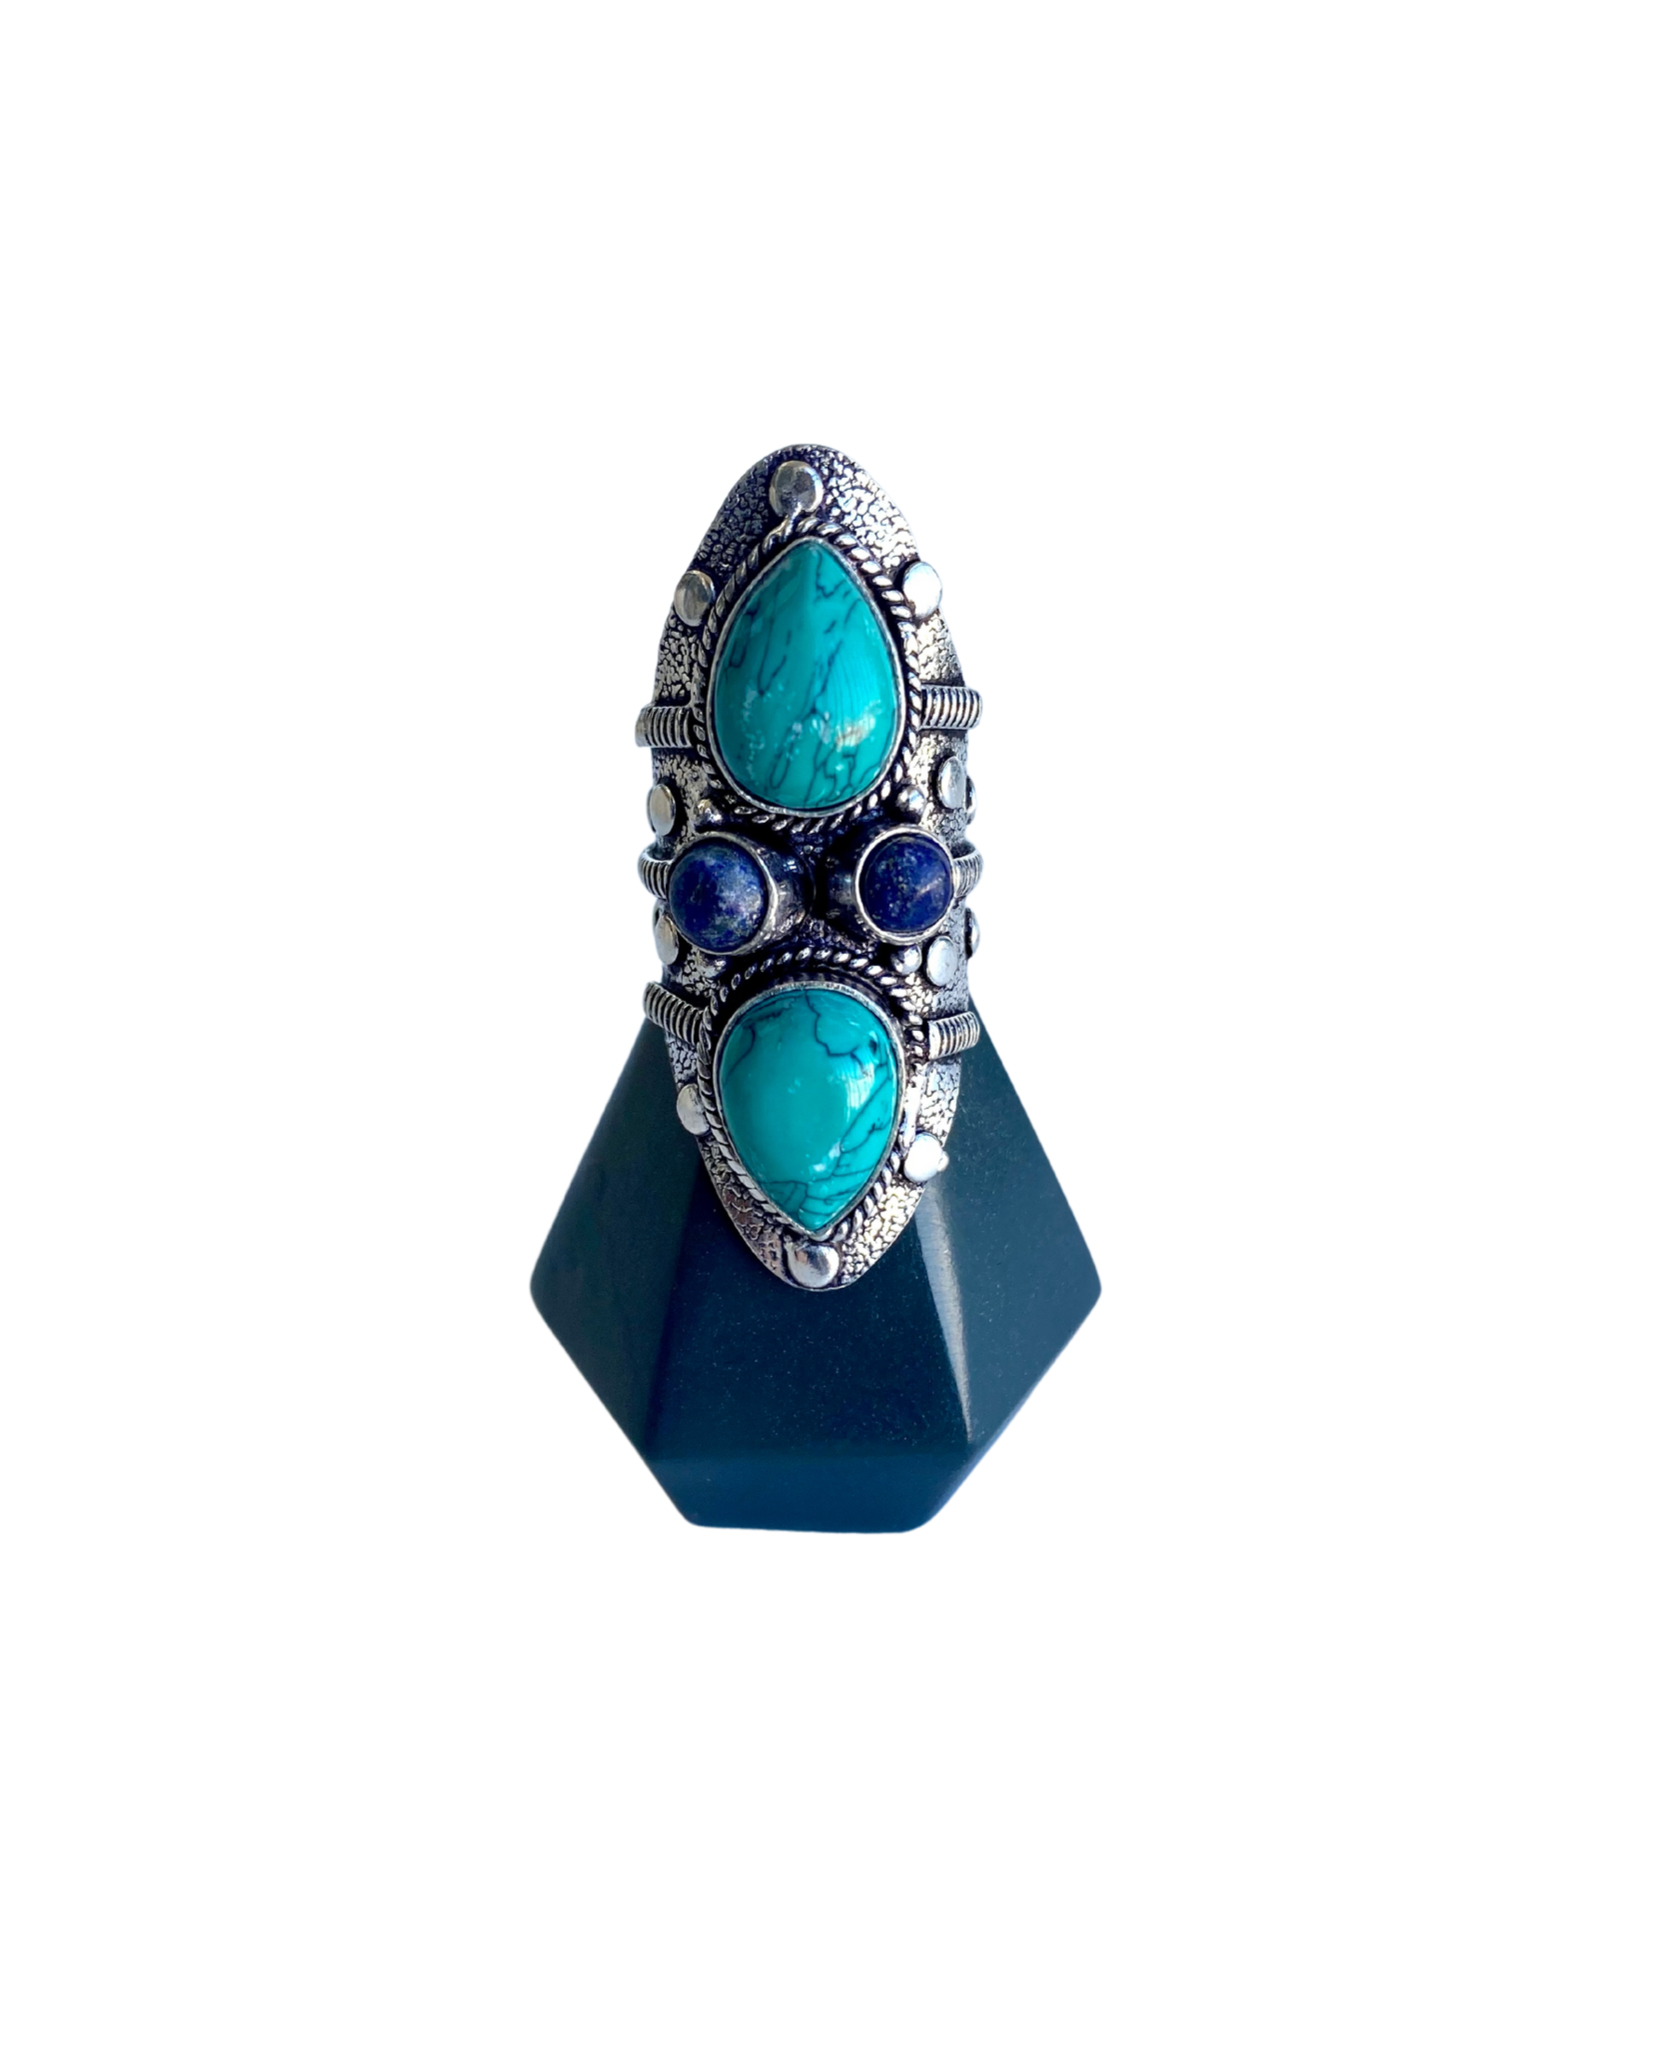 Santa Rosa Turquoise Long Gemstone Ring - Size 8.25